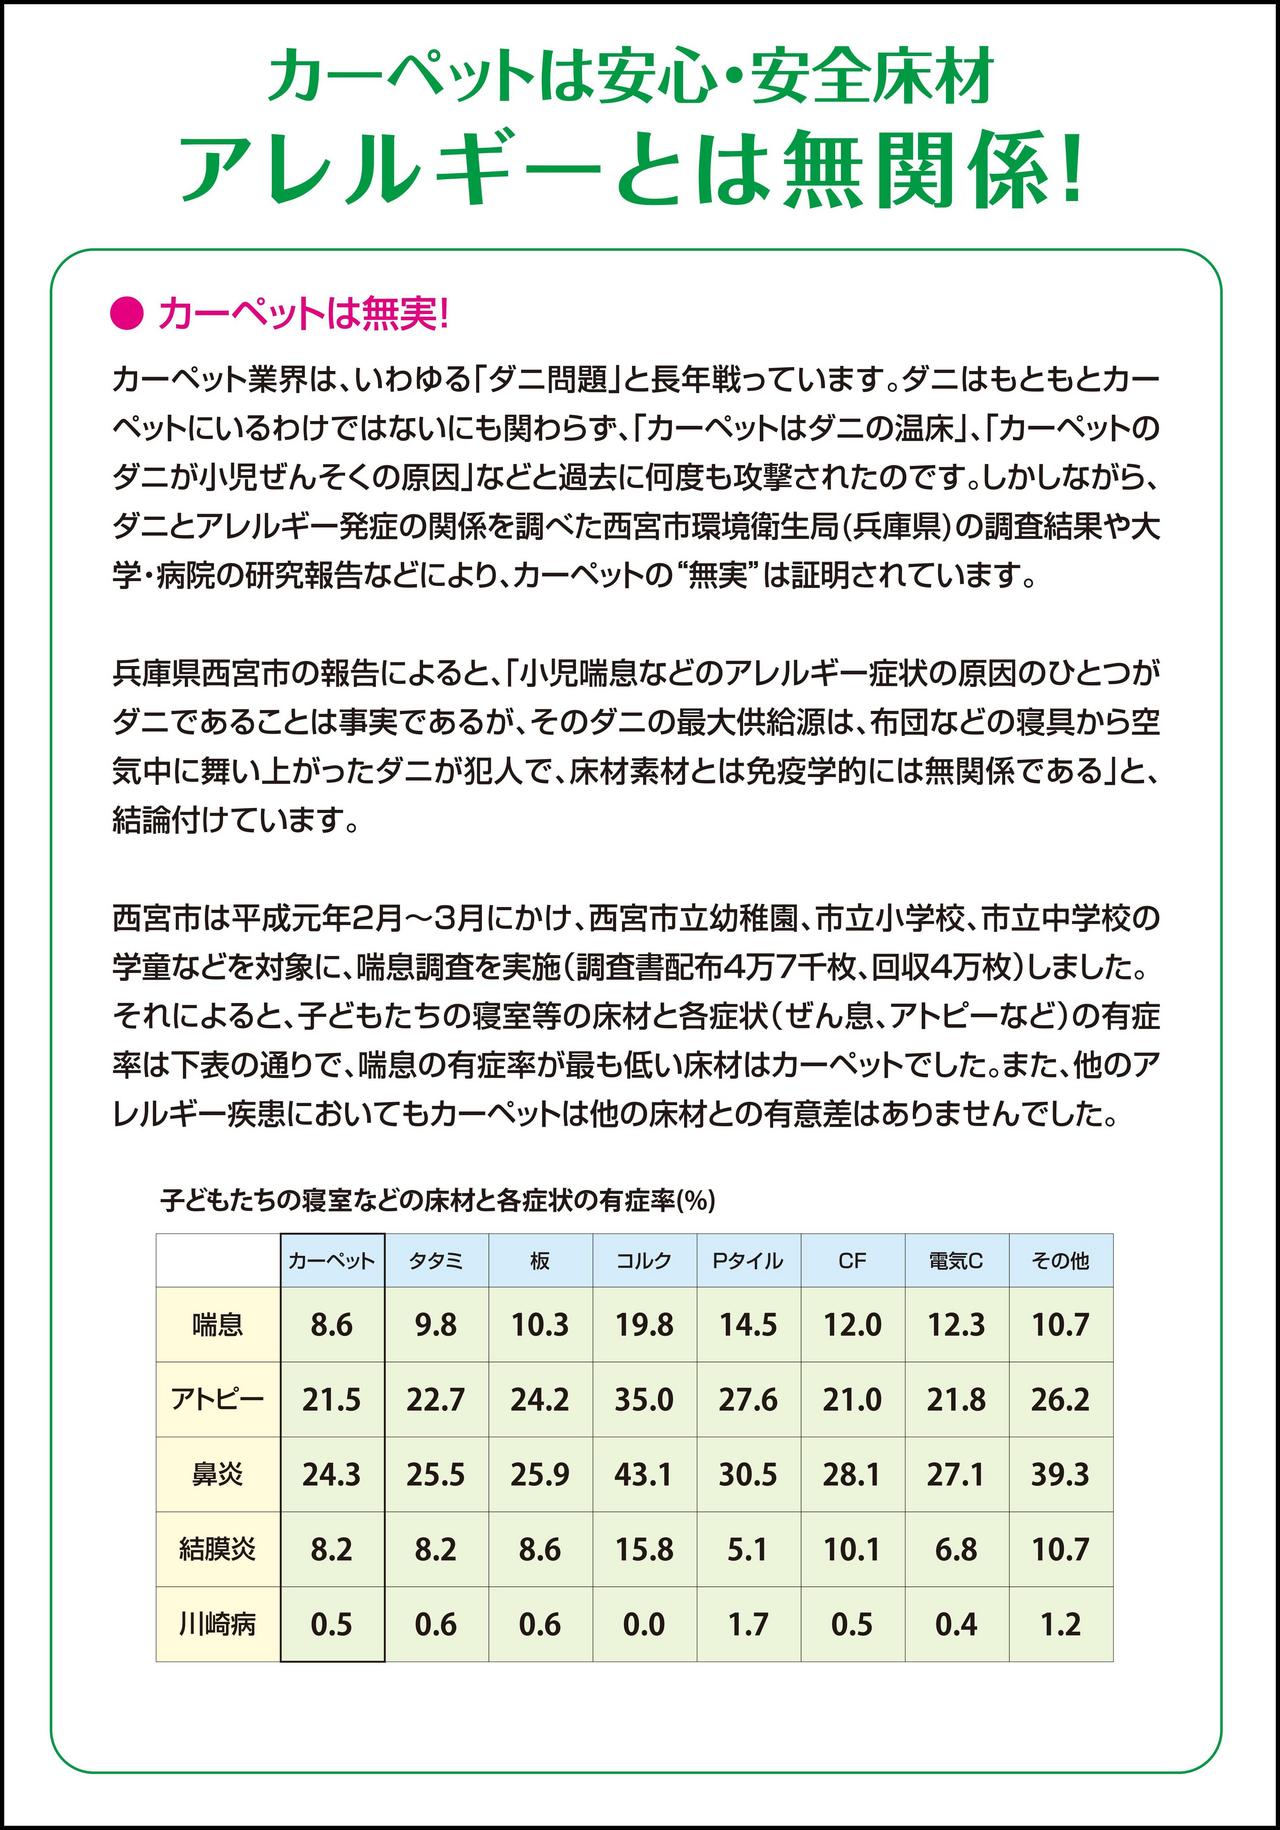 住宅用床材ごとの有症率 日本カーペット工業組合資料